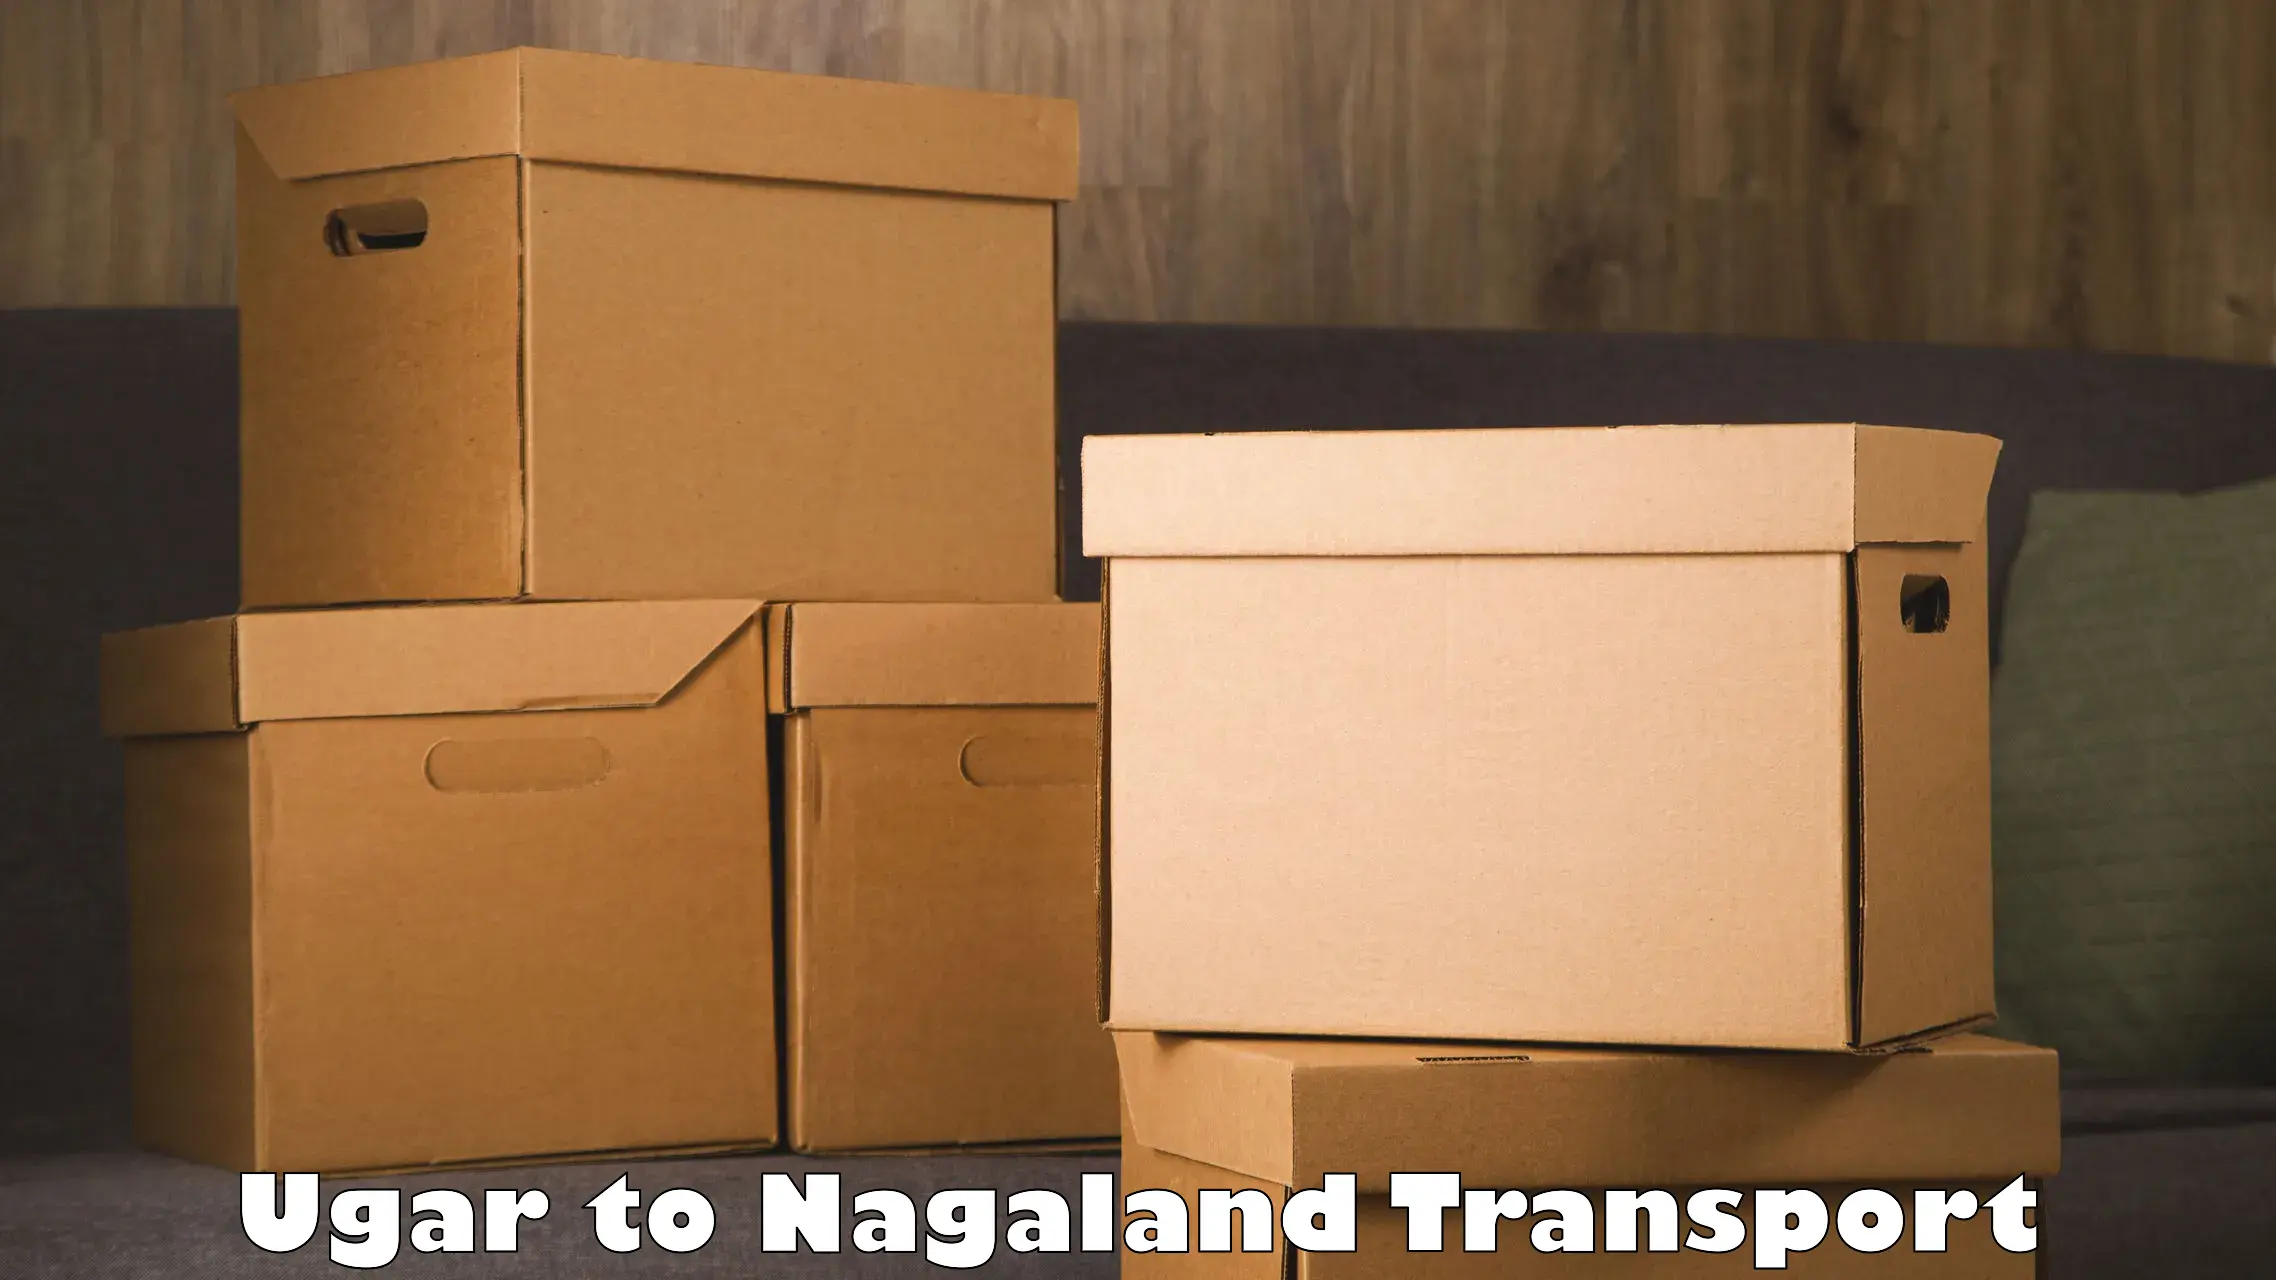 Furniture transport service Ugar to NIT Nagaland